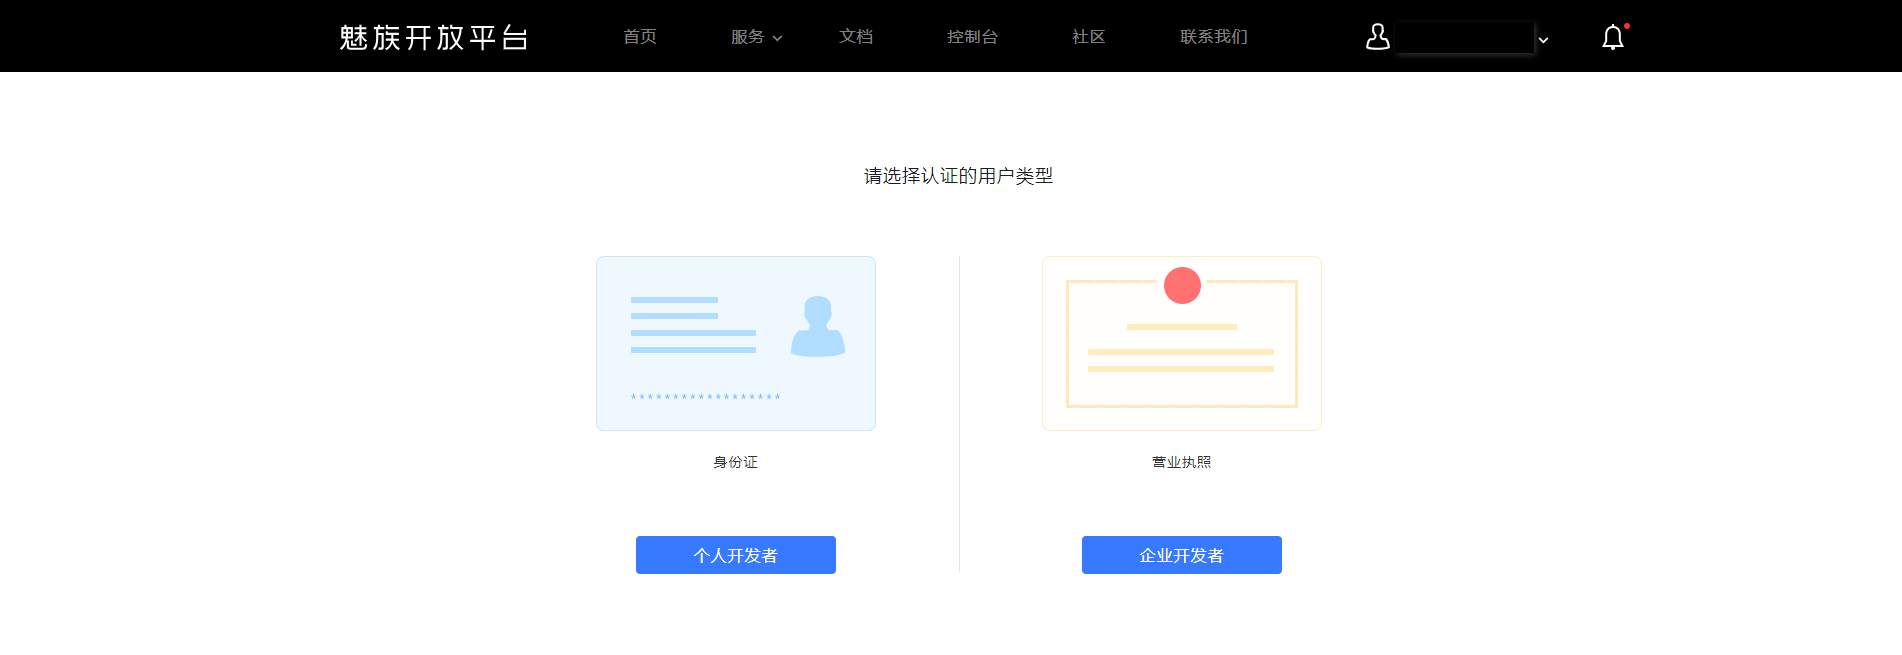 魅族开放平台开发者账户注册及认证流程介绍